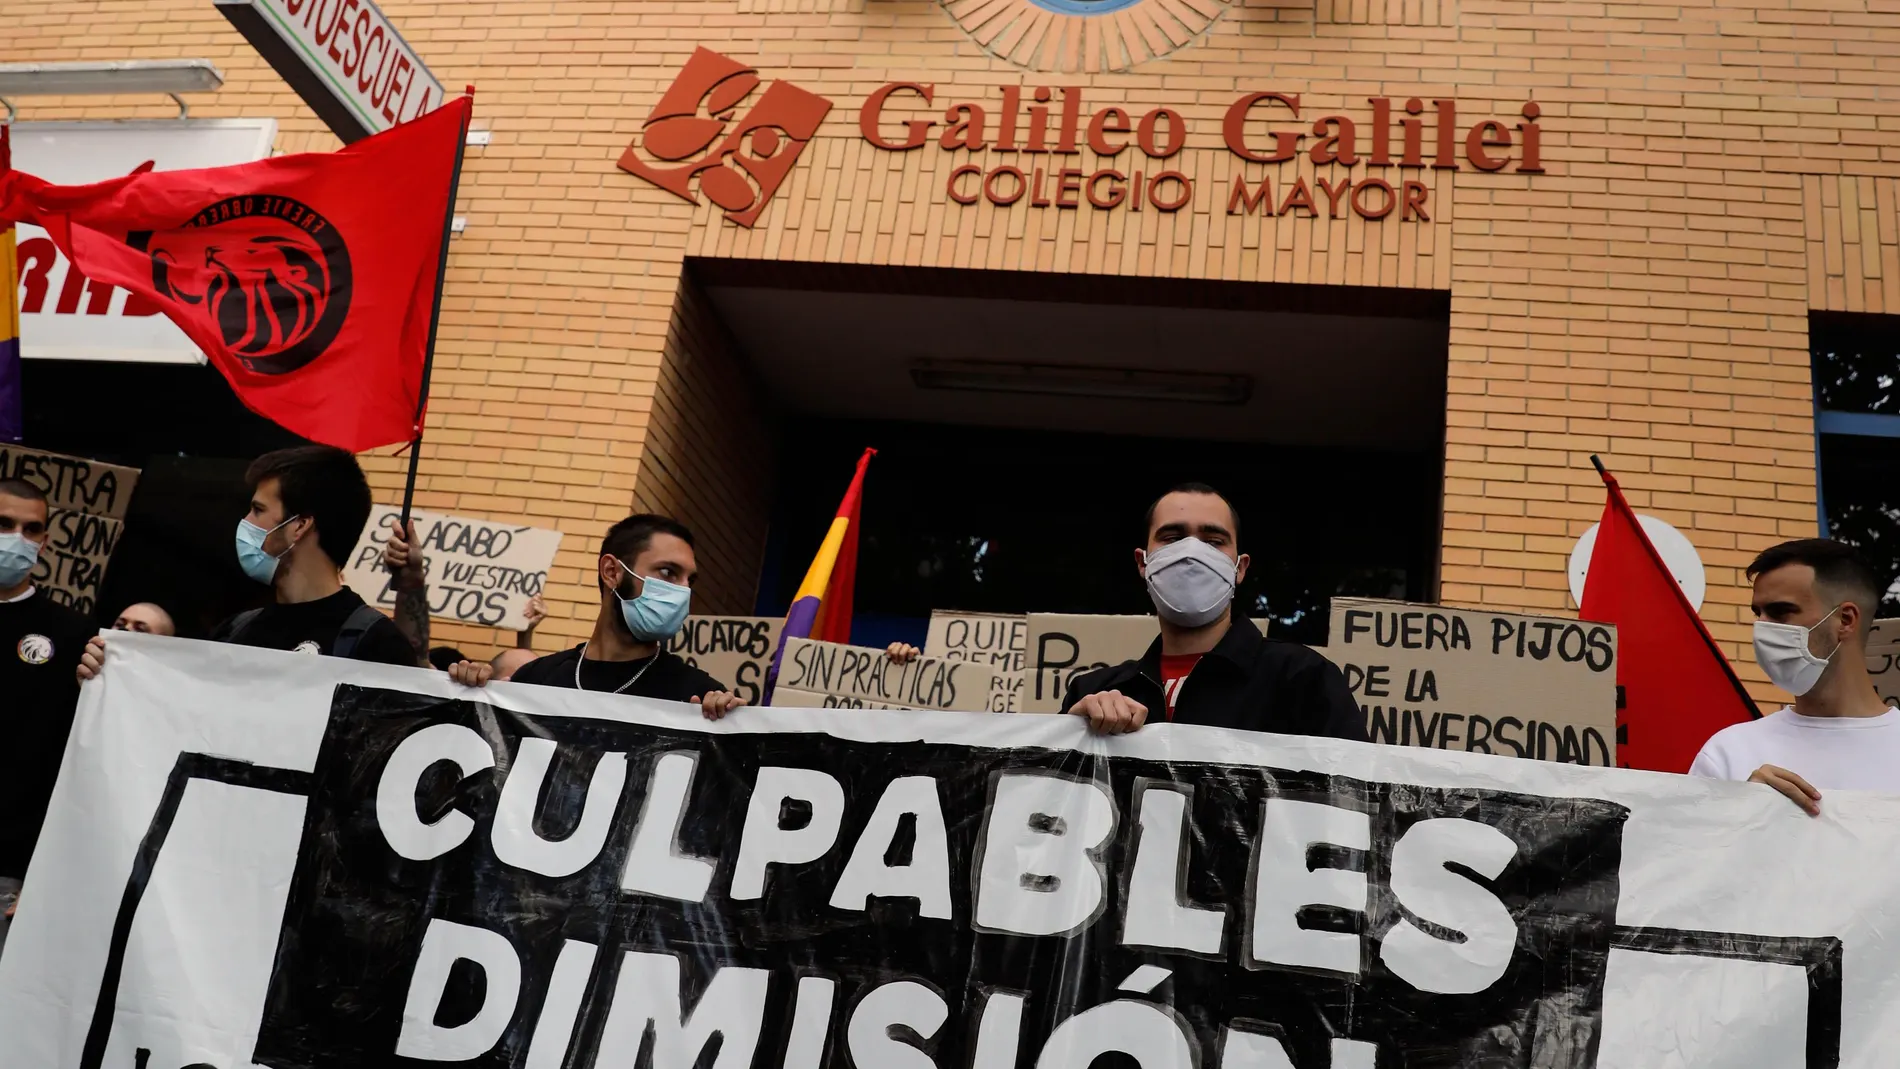 La organización "Estudiantes en lucha" celebraron una concentración frente al colegio mayor Galileo Galilei de València, donde el pasado 26 de septiembre se celebró una fiesta que fue el origen de un brote con más de 160 contagiados de covid-19 en varias universidades, para reclamar medidas contra los culpables.